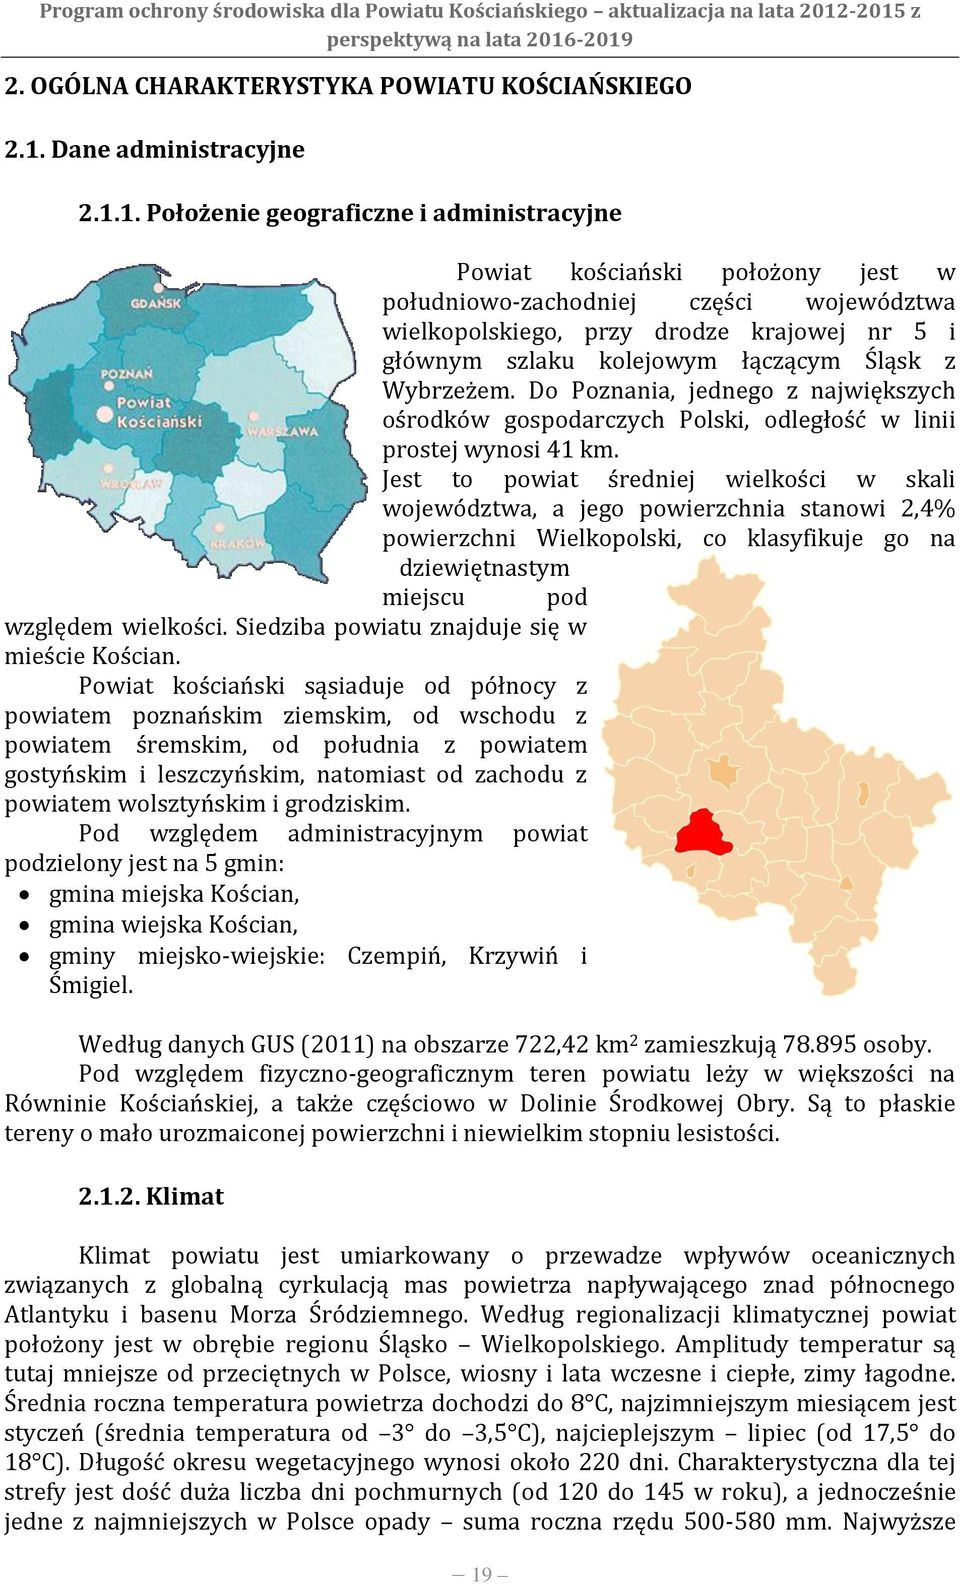 1. Położenie geograficzne i administracyjne Powiat kościański położony jest w południowo-zachodniej części województwa wielkopolskiego, przy drodze krajowej nr 5 i głównym szlaku kolejowym łączącym